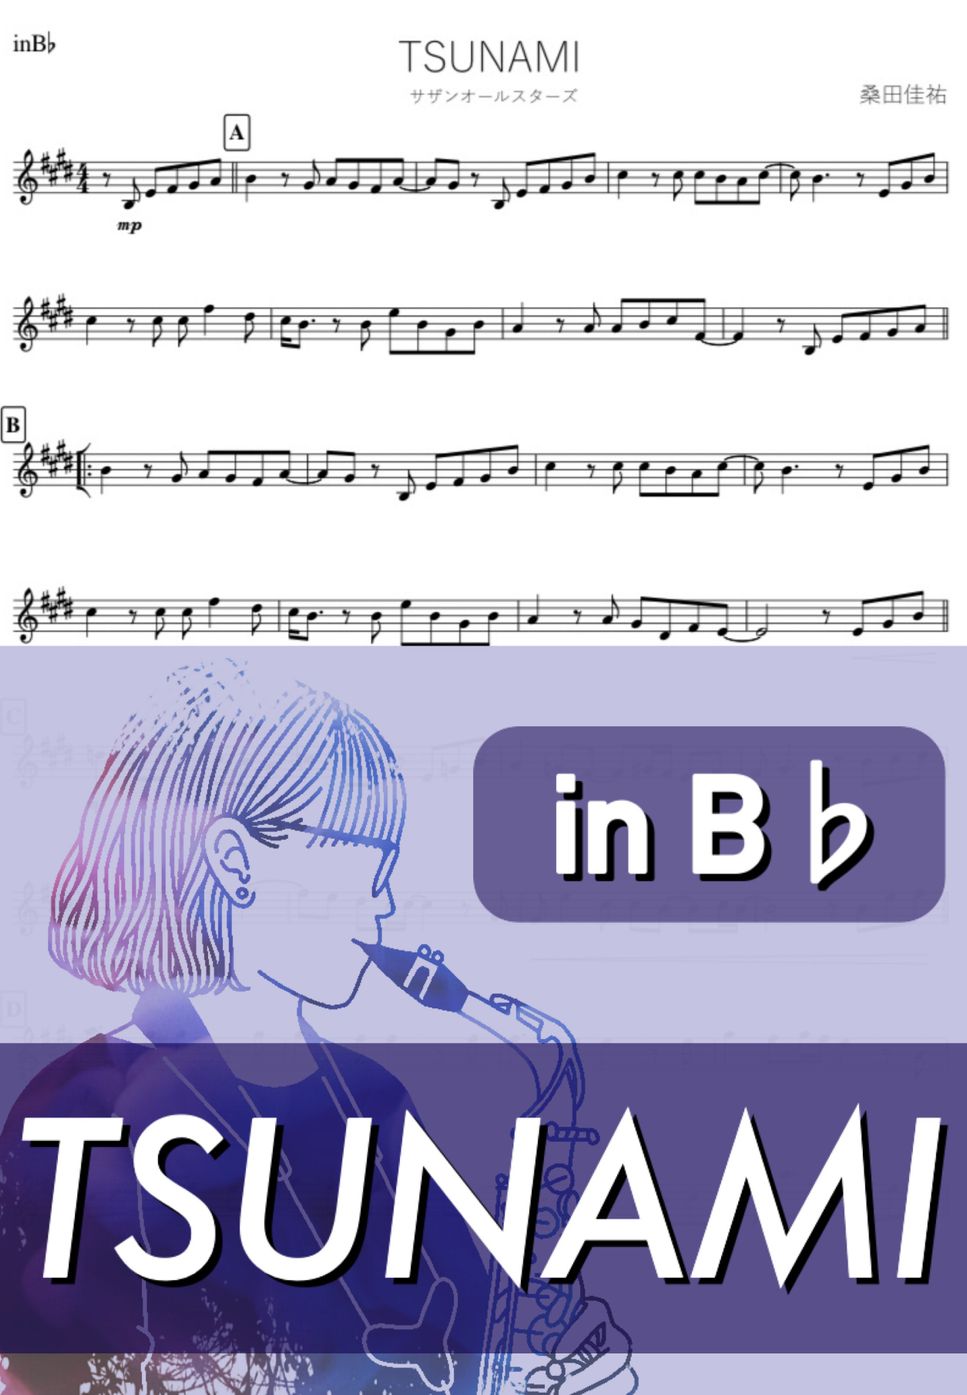 サザンオールスターズ - TSUNAMI (B♭) by kanamusic